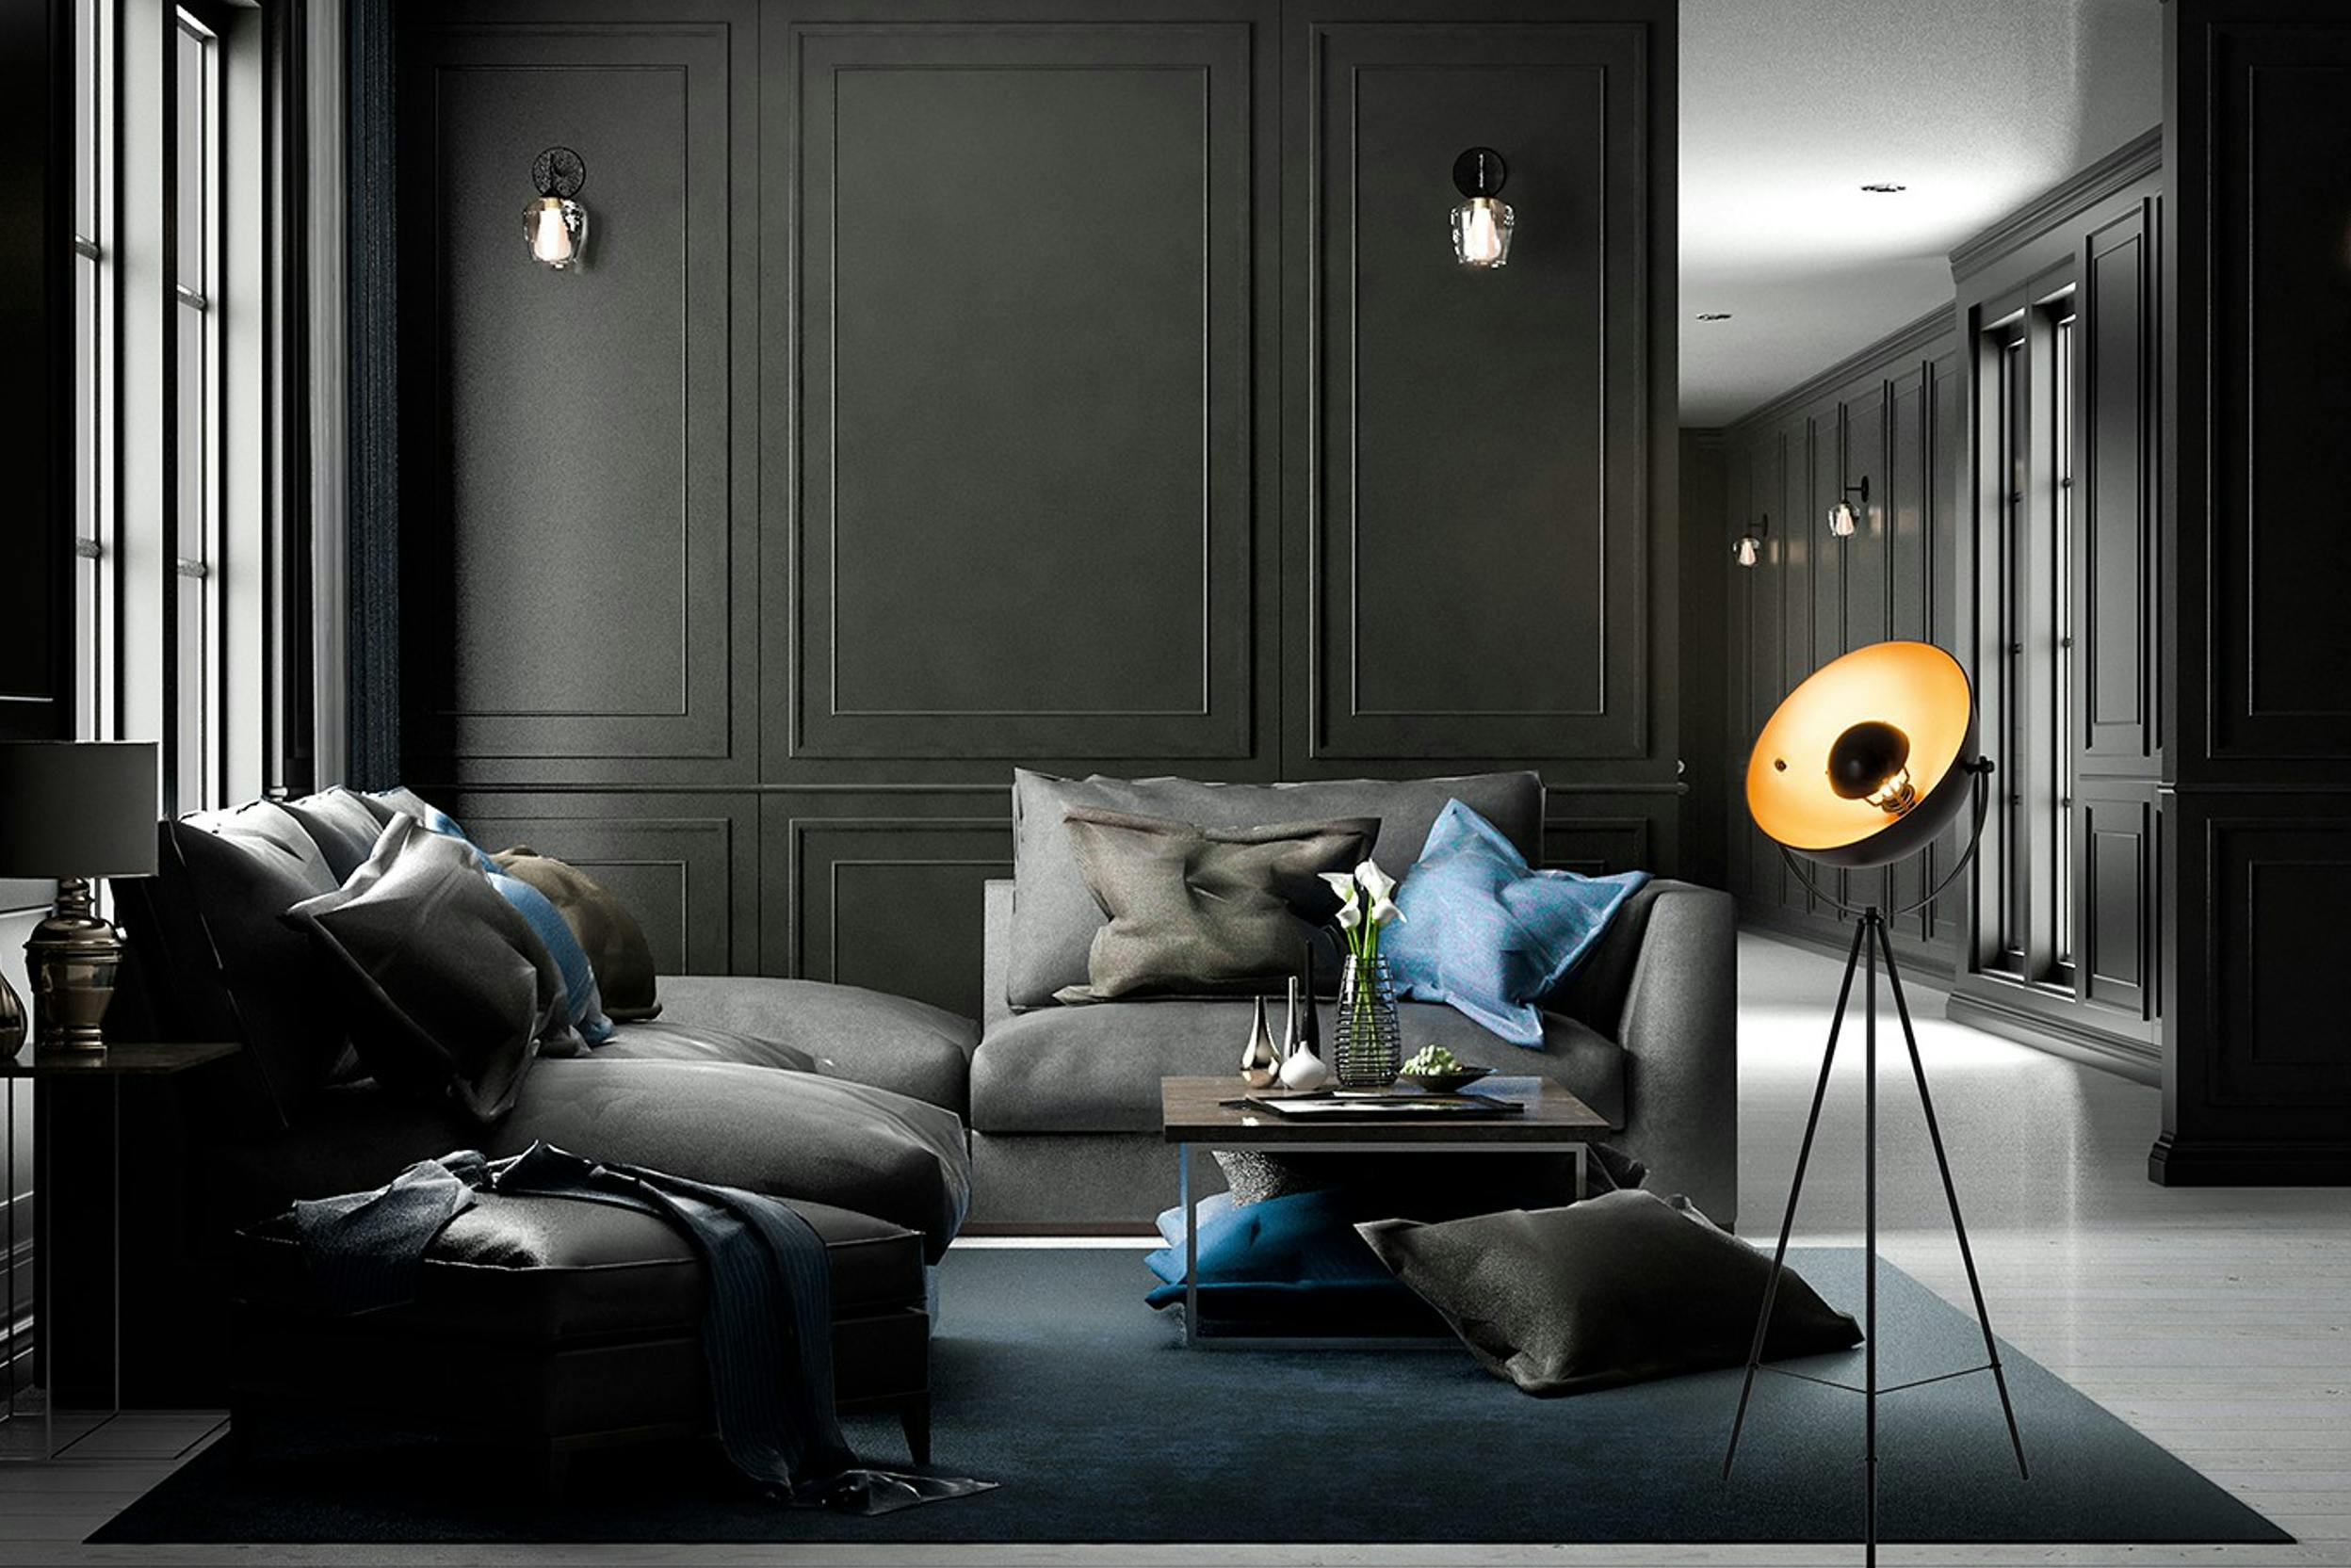 grande pièce aux murs noirs avec grandes fenêtres, meubles gris foncés, coussins bleus, tapis gris, lampes noires